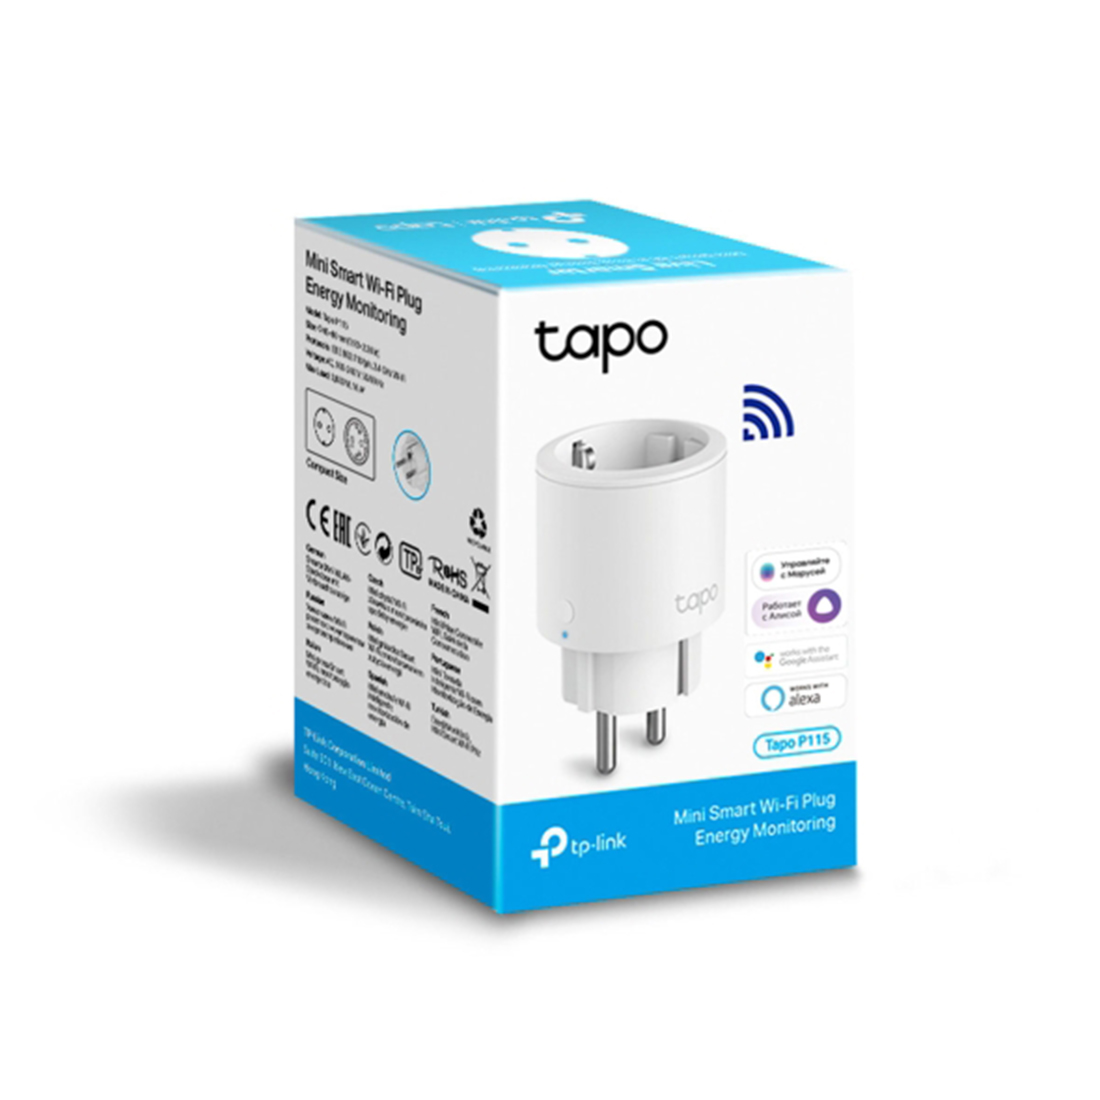 Умная мини Wi-Fi розетка TP-Link Tapo P115 - оптом